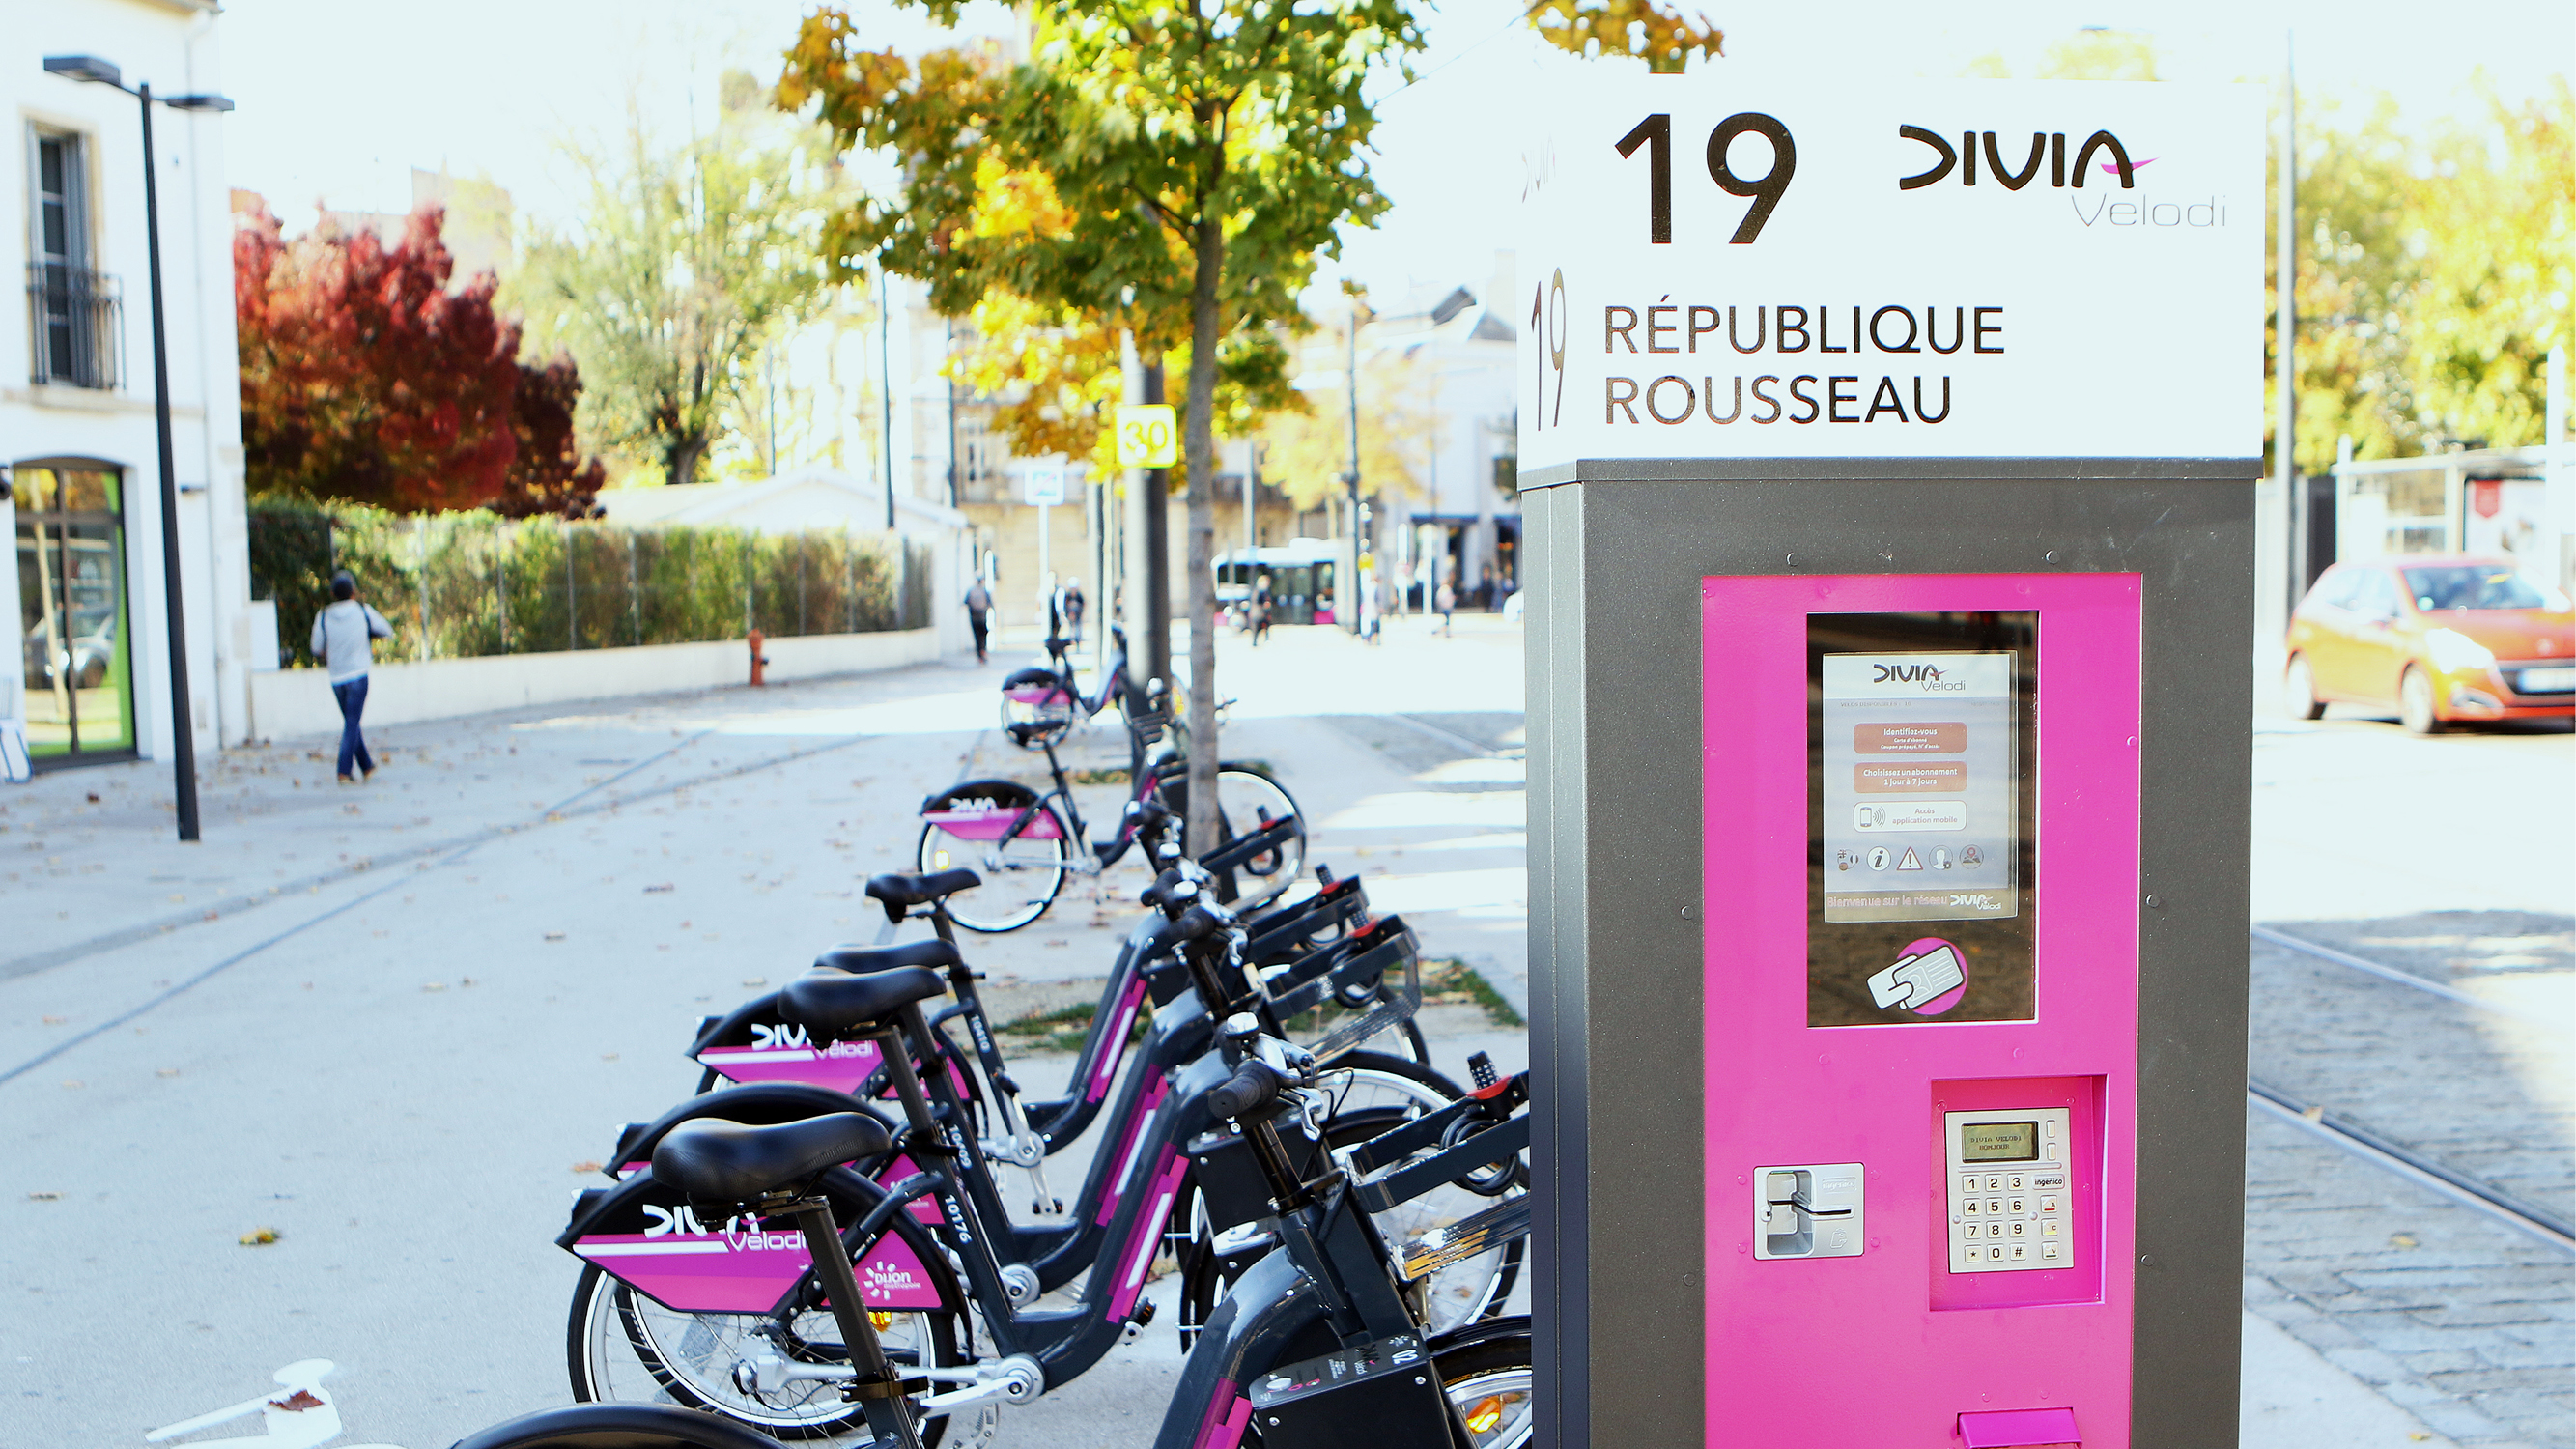 DiviaVélodi, le vélo en libre-service à Dijon